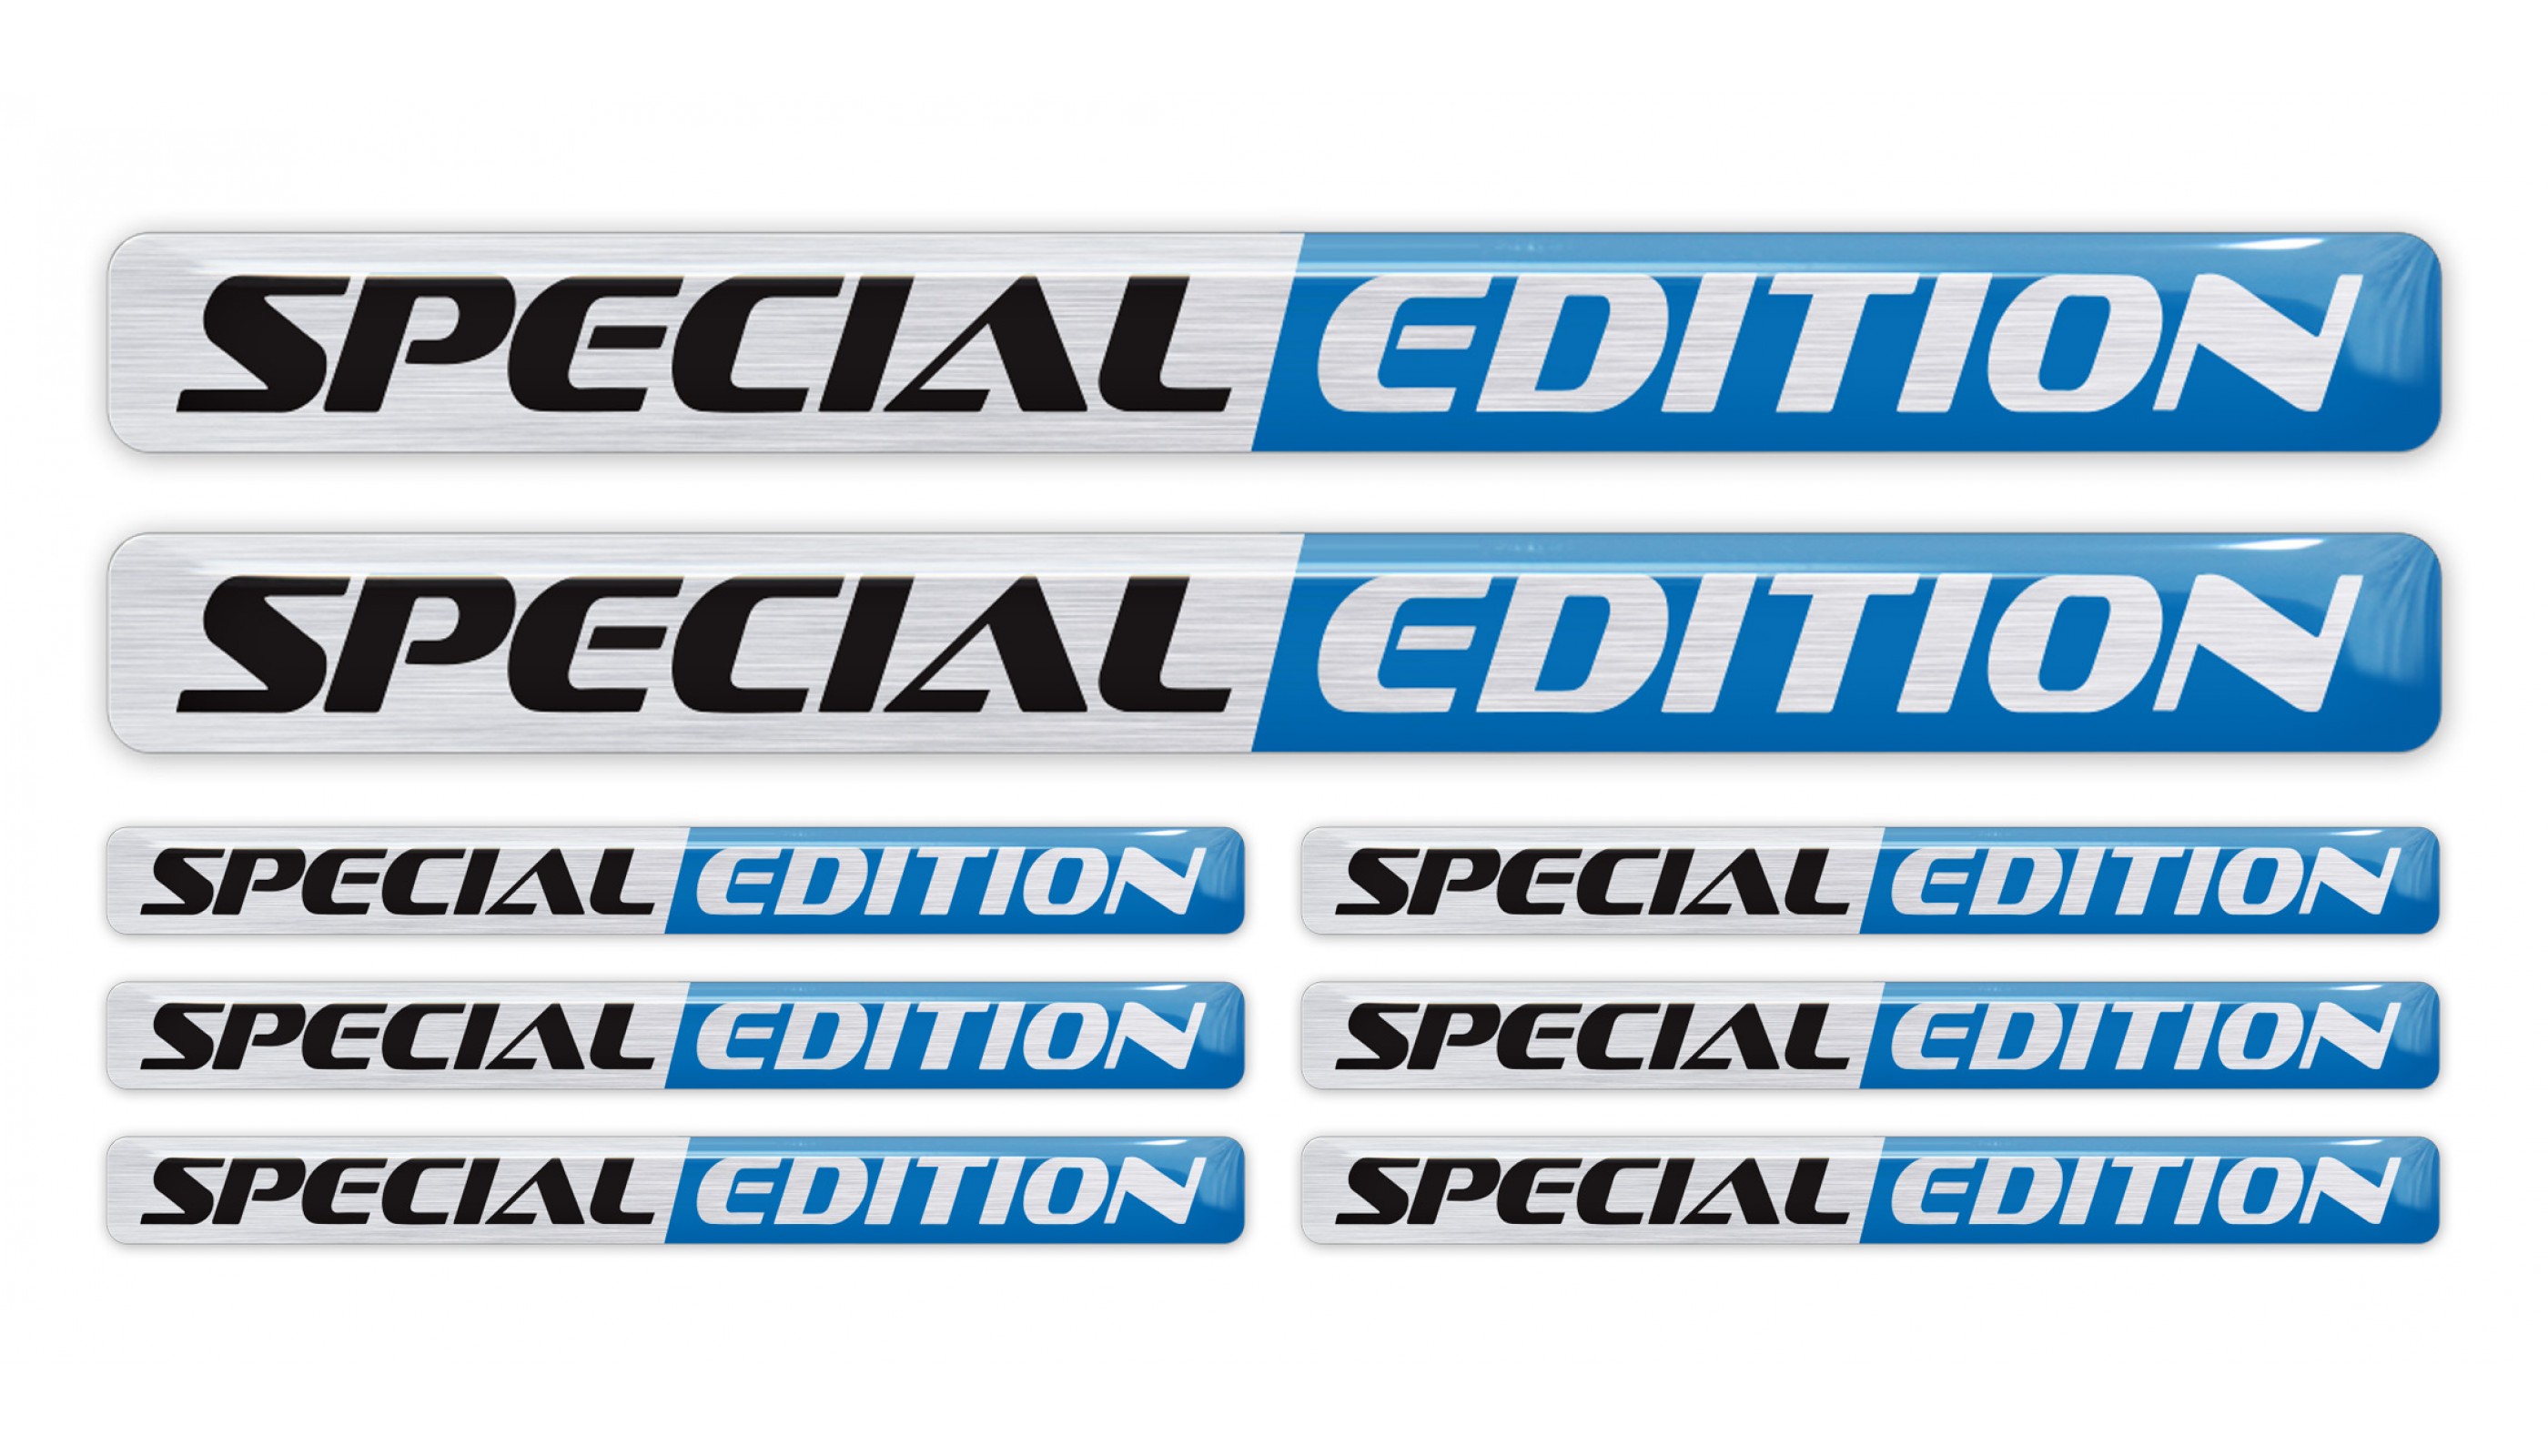 Special Edition